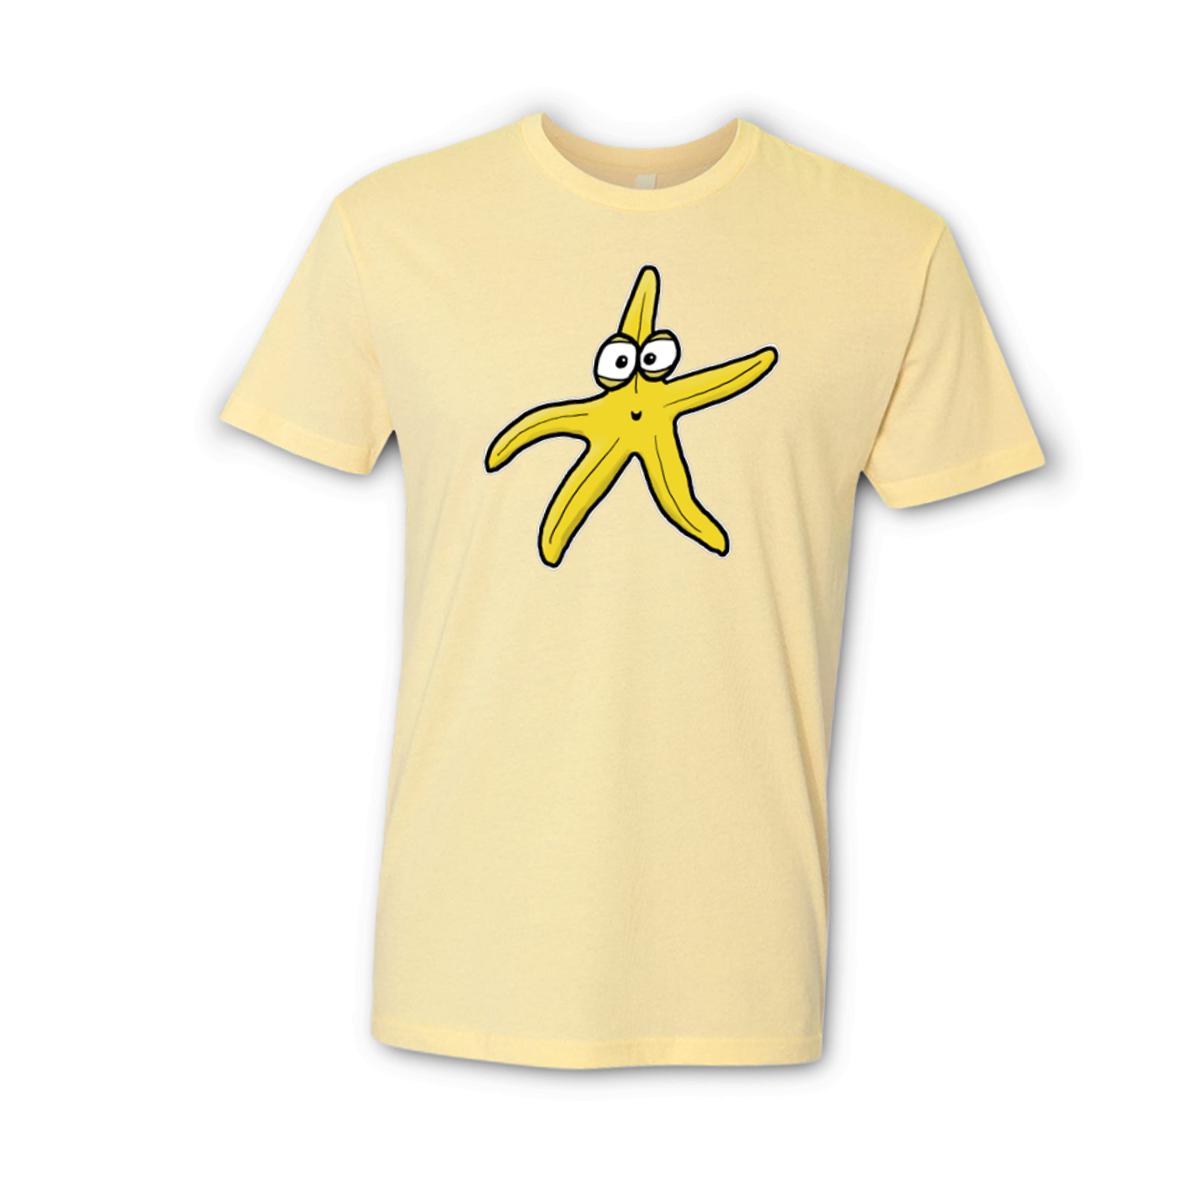 Starfish Unisex Tee Medium banana-cream